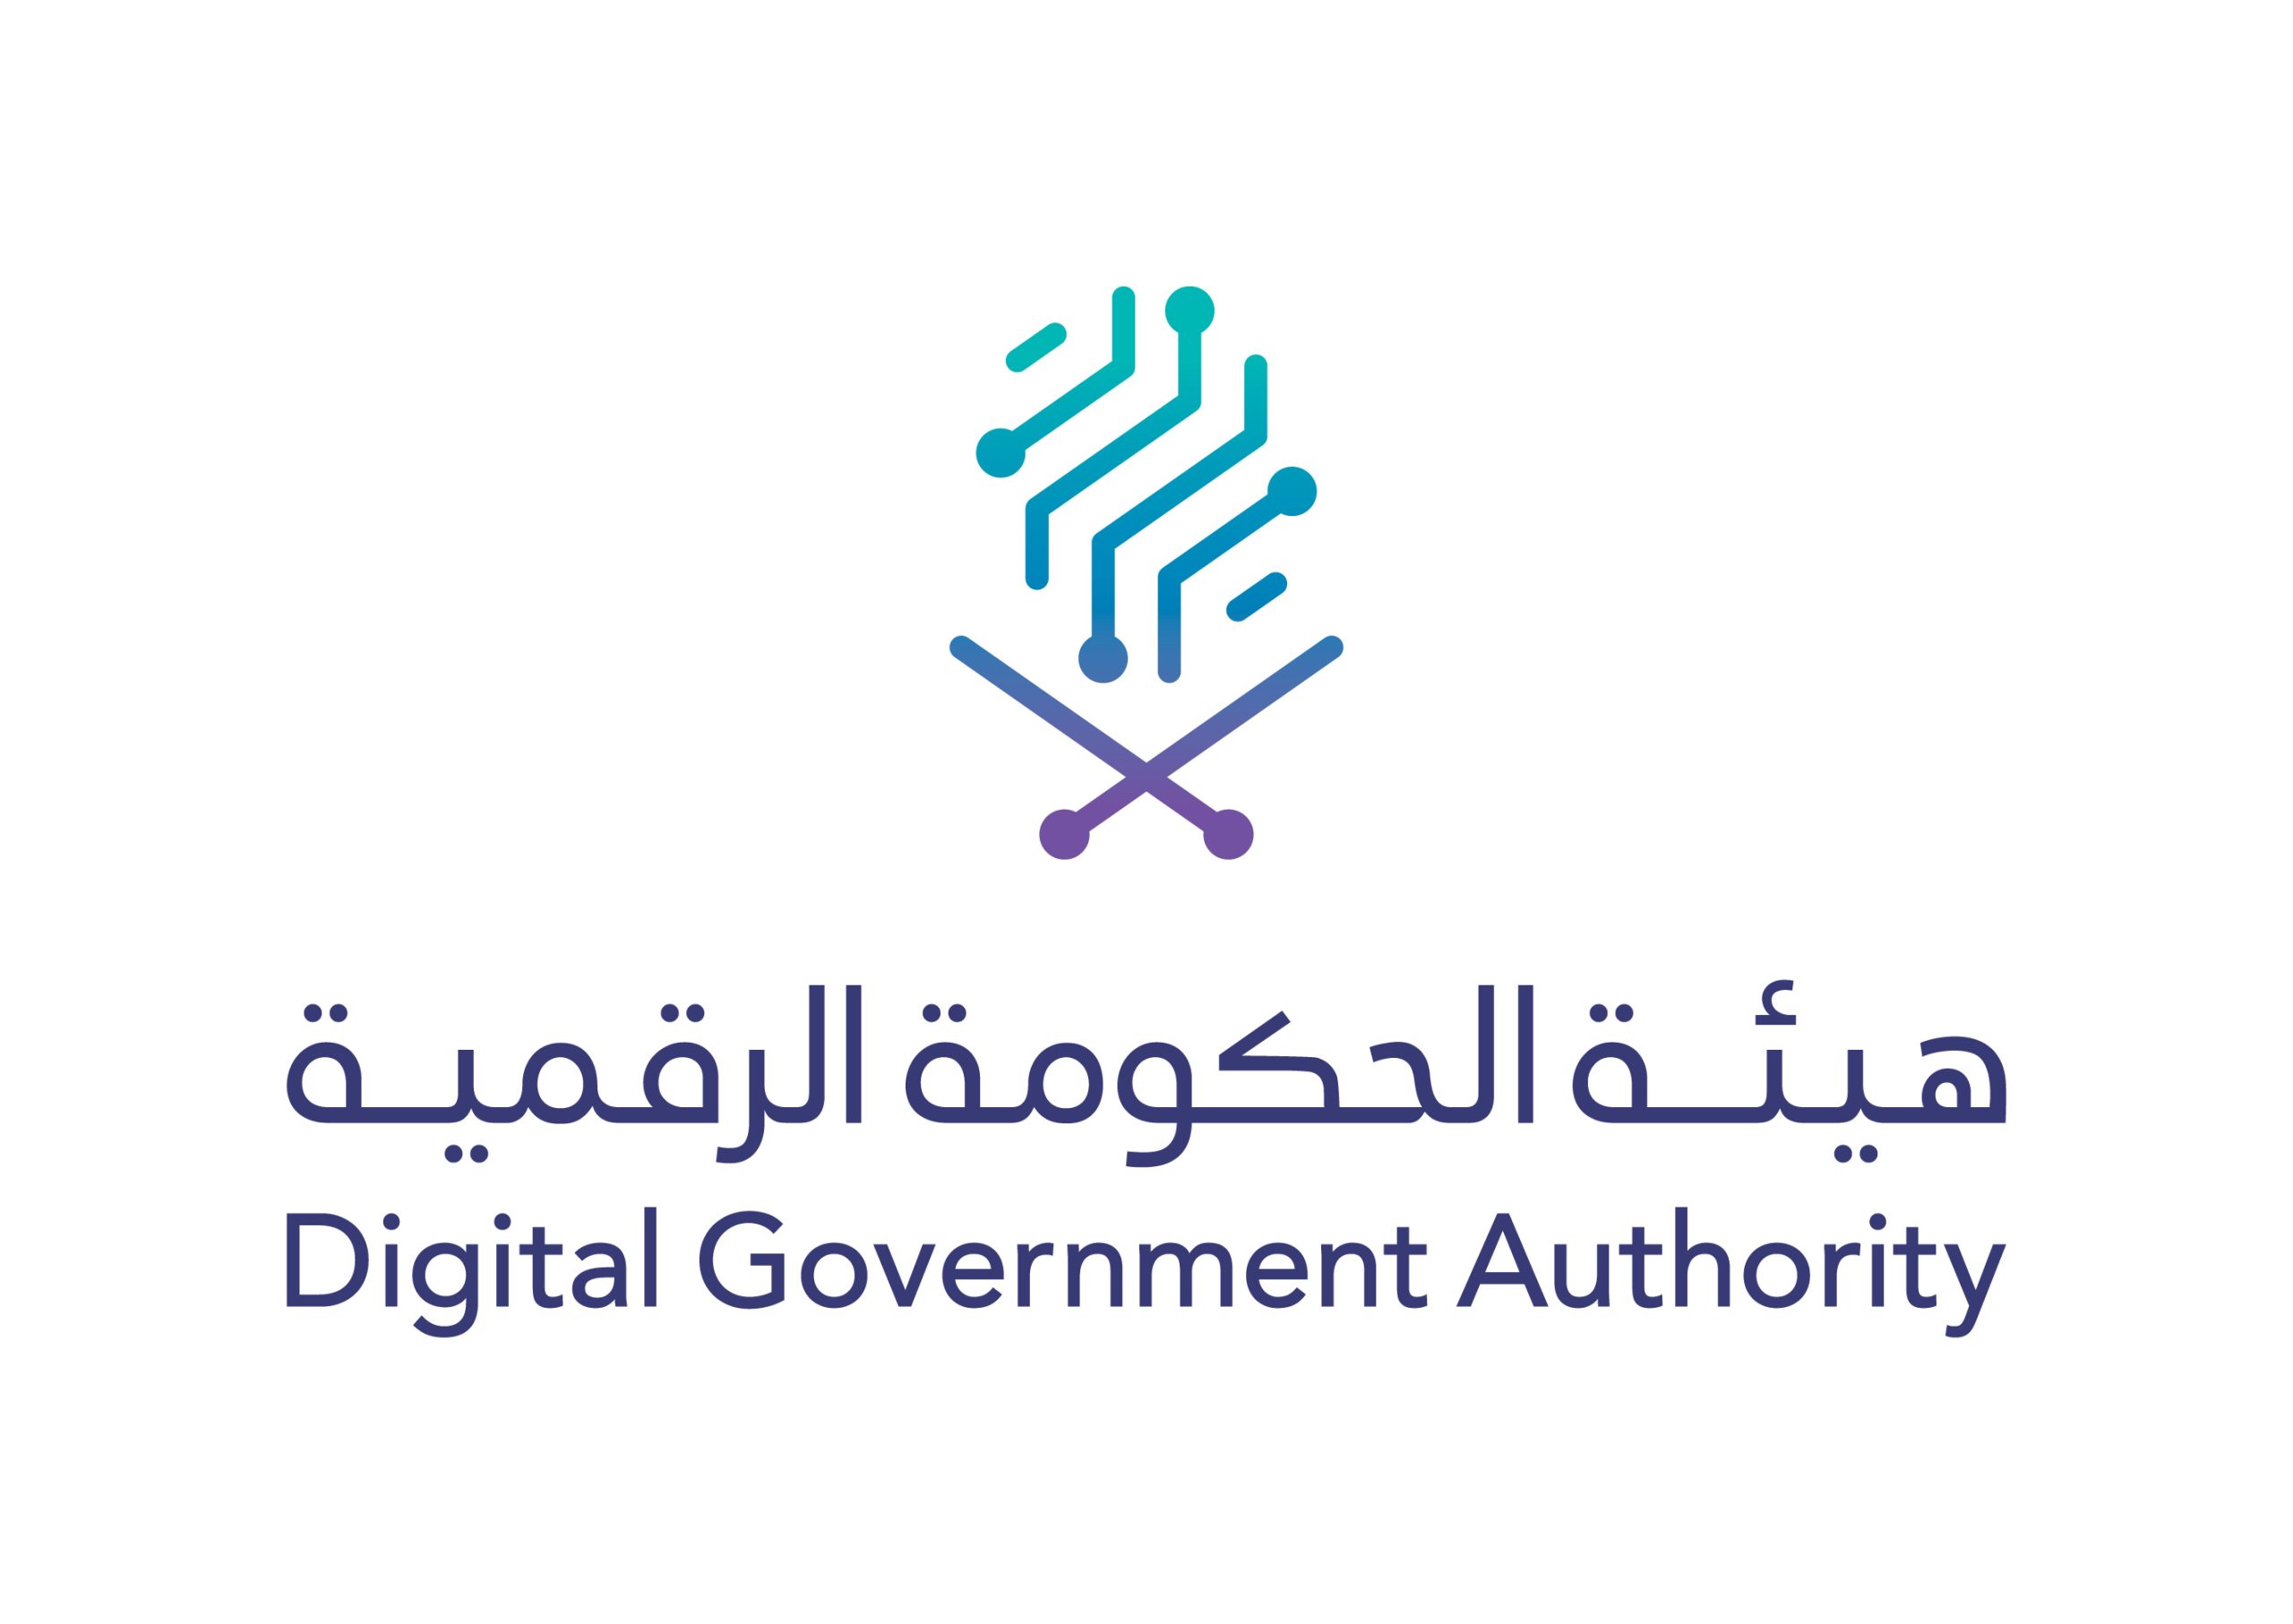 هيئة الحكومة الرقمية تعلن عن وظائف شاغرة لحملة الشهادة الجامعية